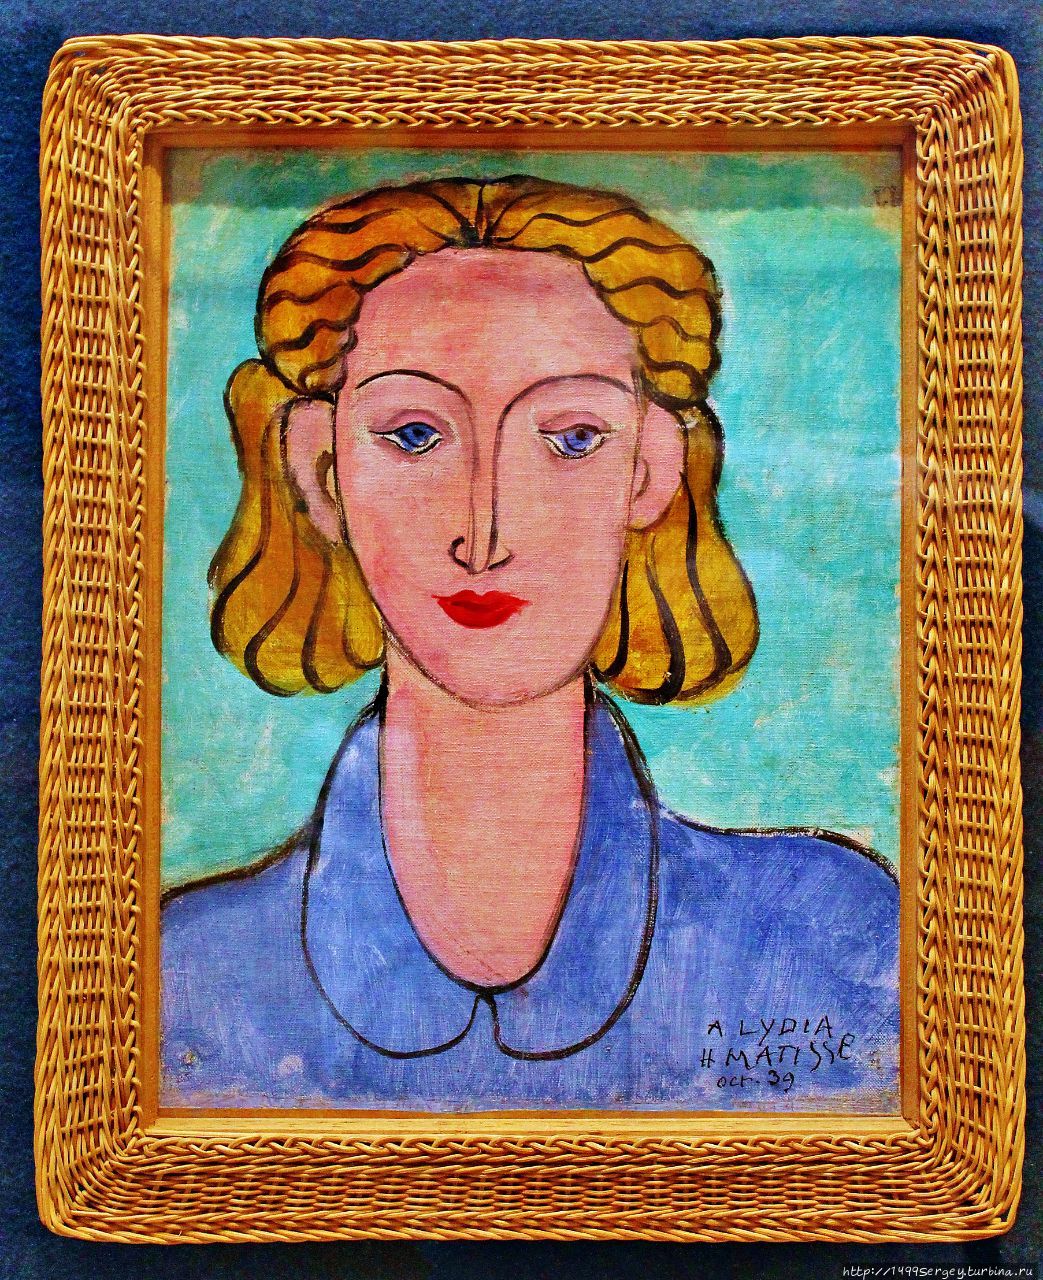 Молодая женщина в синей блузе (портрет Л.Н. Делекторской) 1939 год. Музей Эрмитаж, Главный штаб (фото из личного архива) Санкт-Петербург, Россия